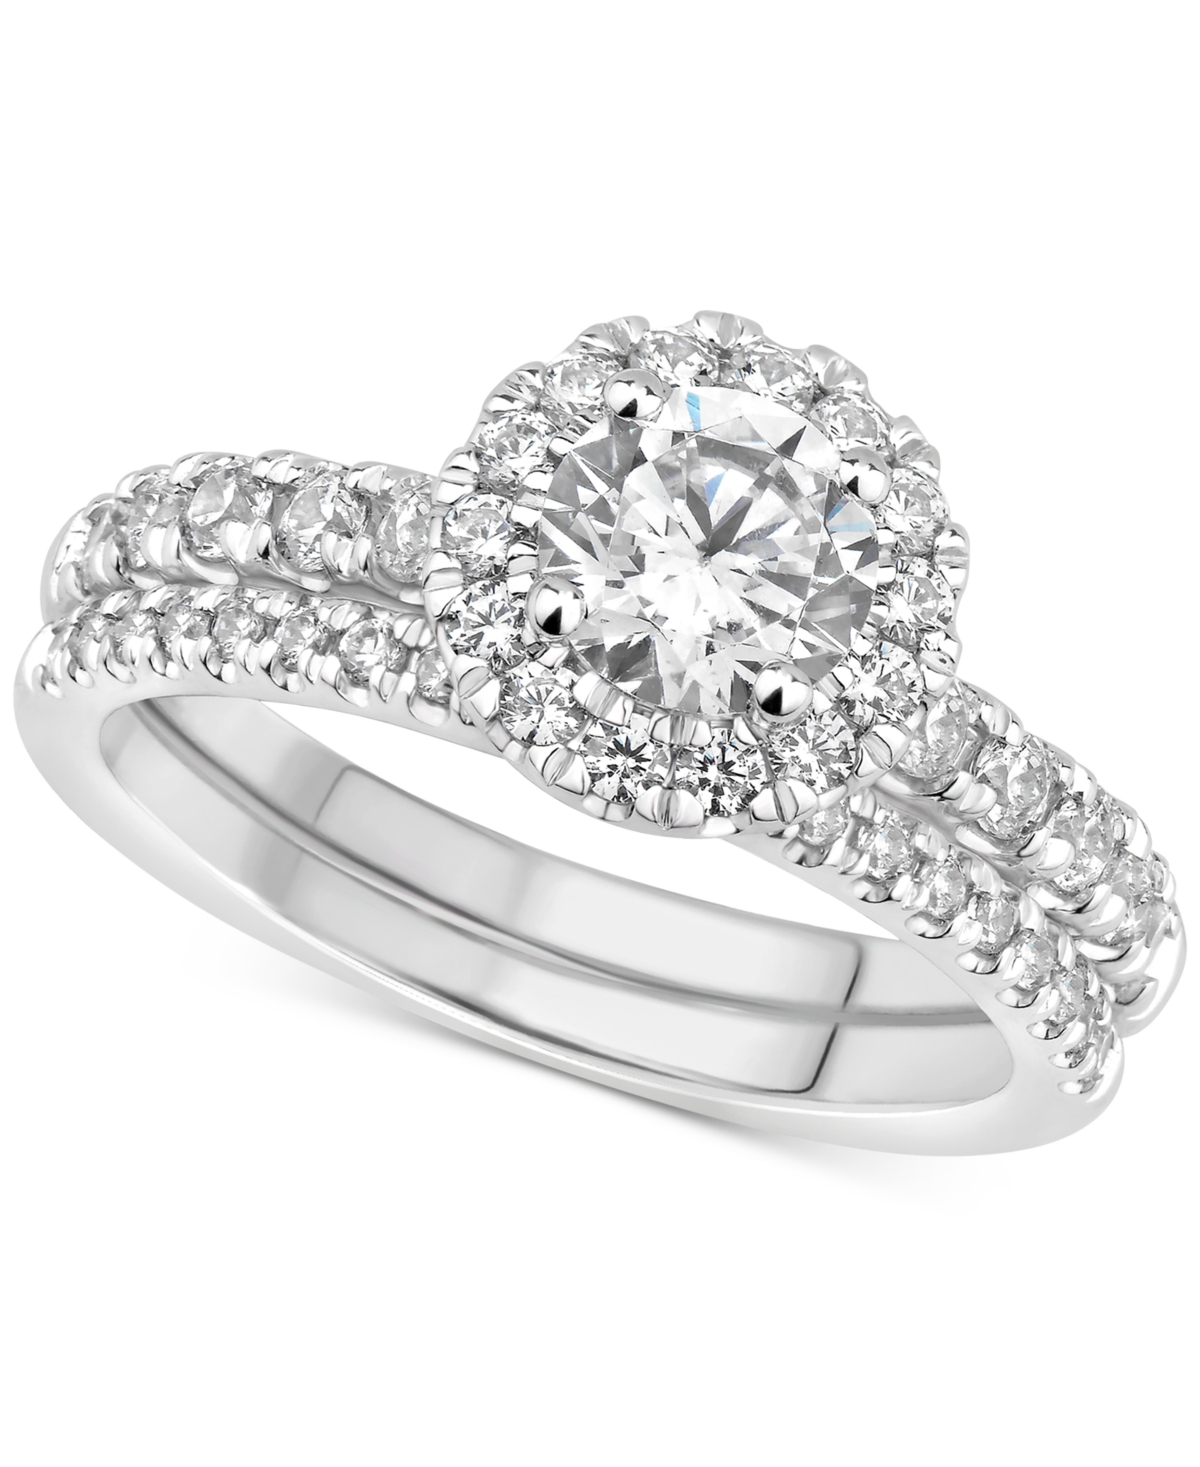 Gia Certified Diamond Halo Bridal Set (1-1/2 ct. t.w.) in 14k White Gold - White Gold